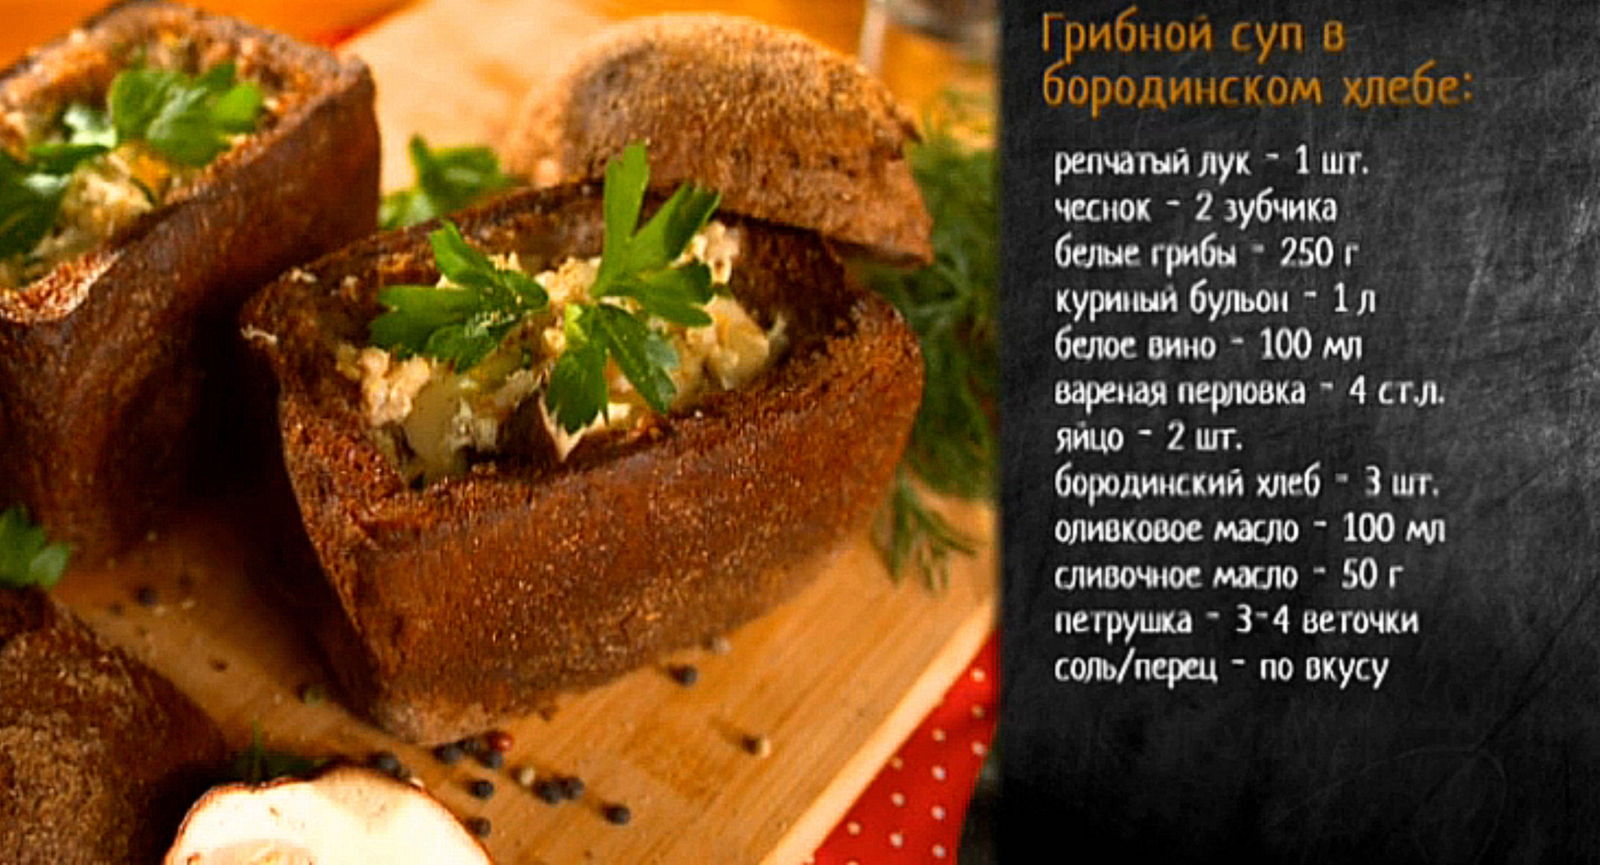 Рецепт грибного супа с перловкой в хлебе